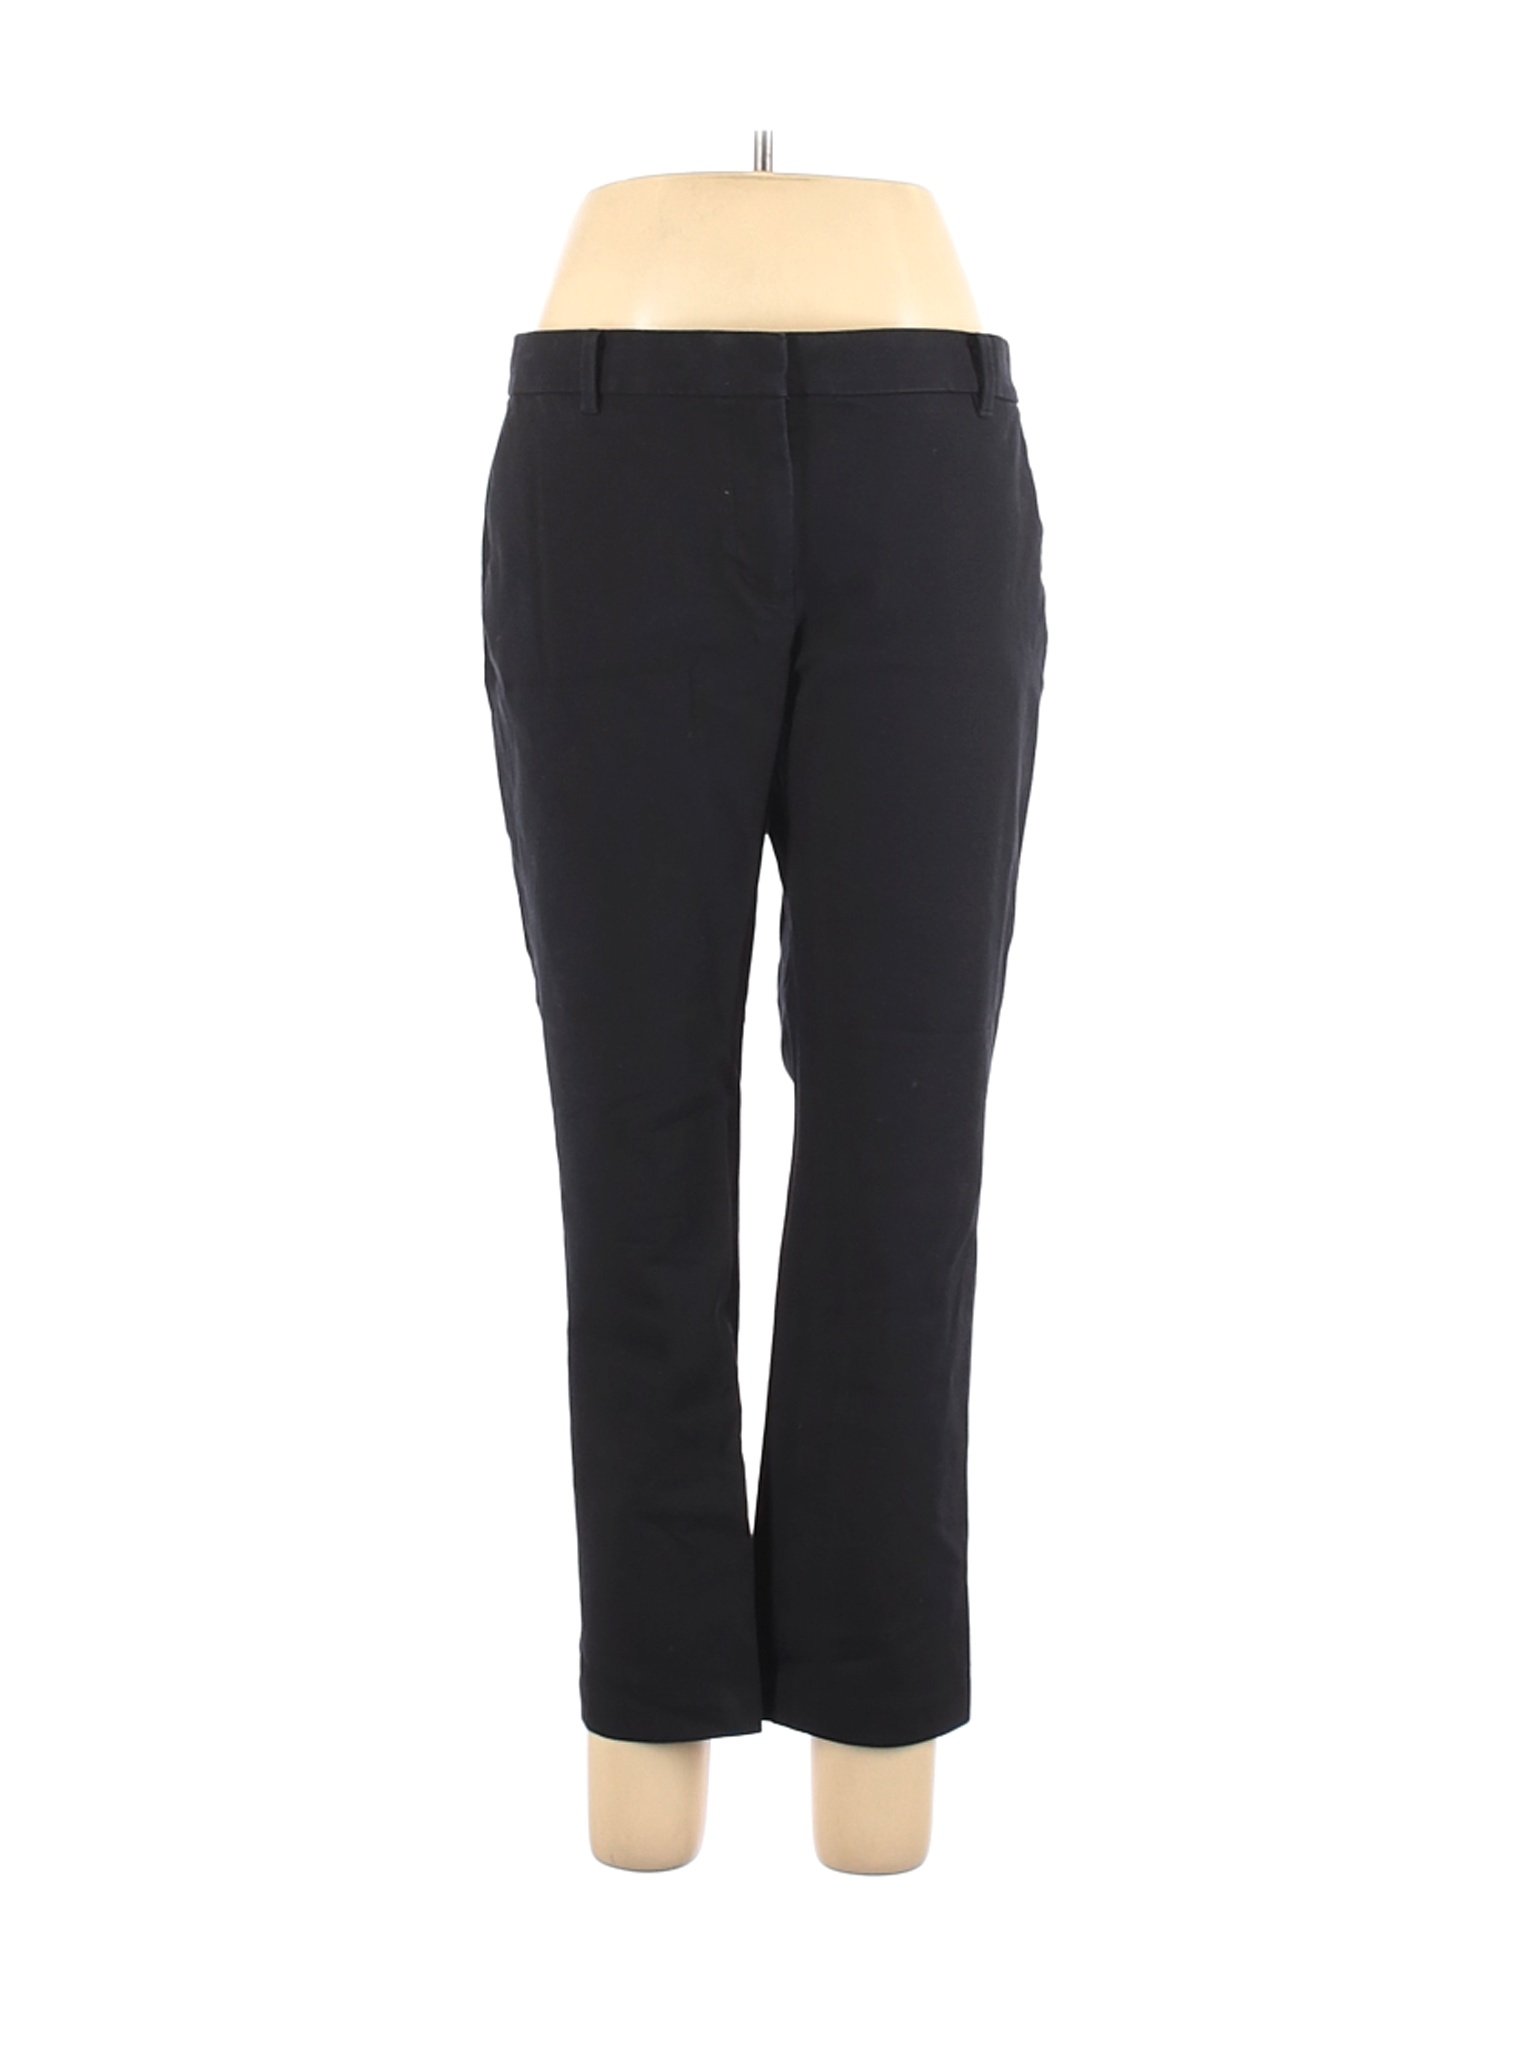 Ann Taylor Women Black Dress Pants 10 | eBay